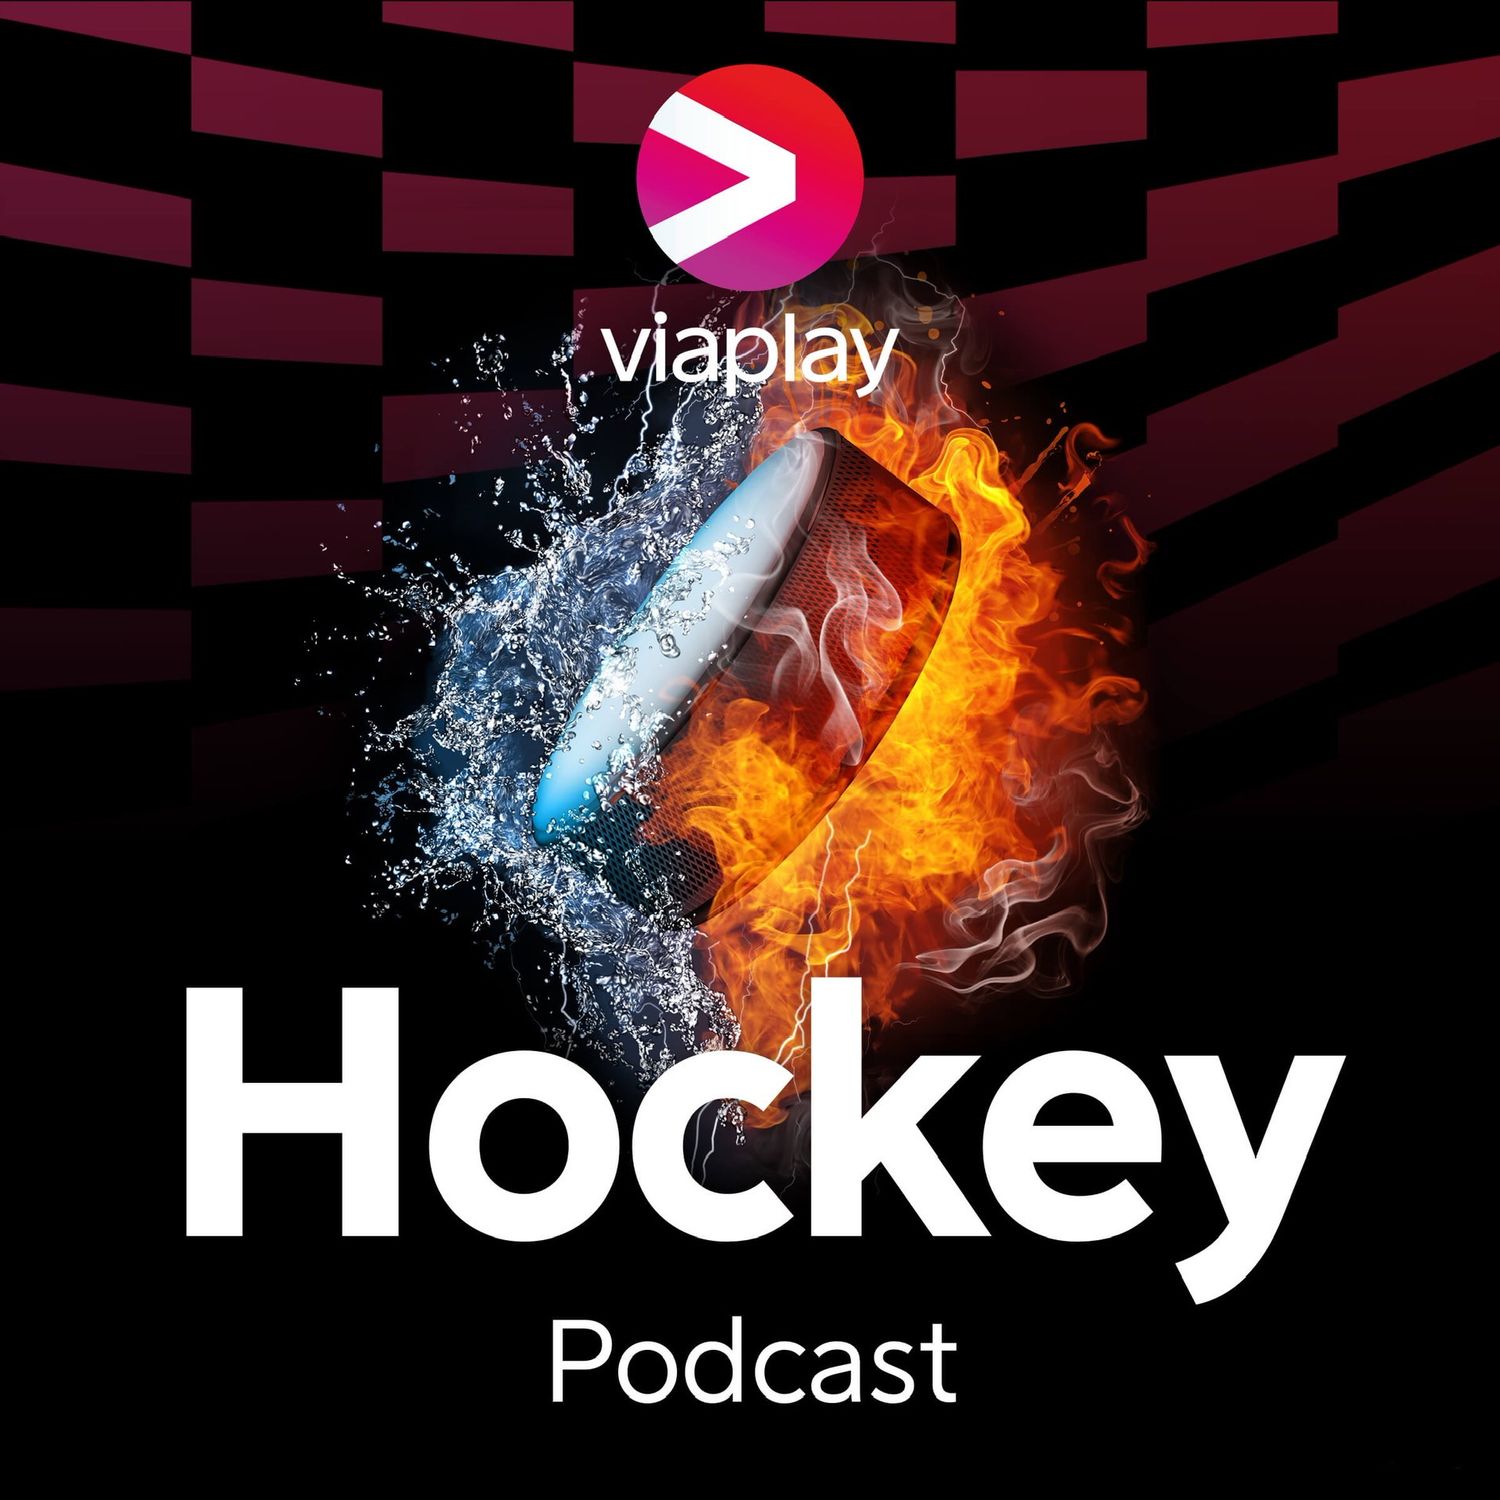 356. Viaplay Hockey Podcast – Colorado, mästarna!